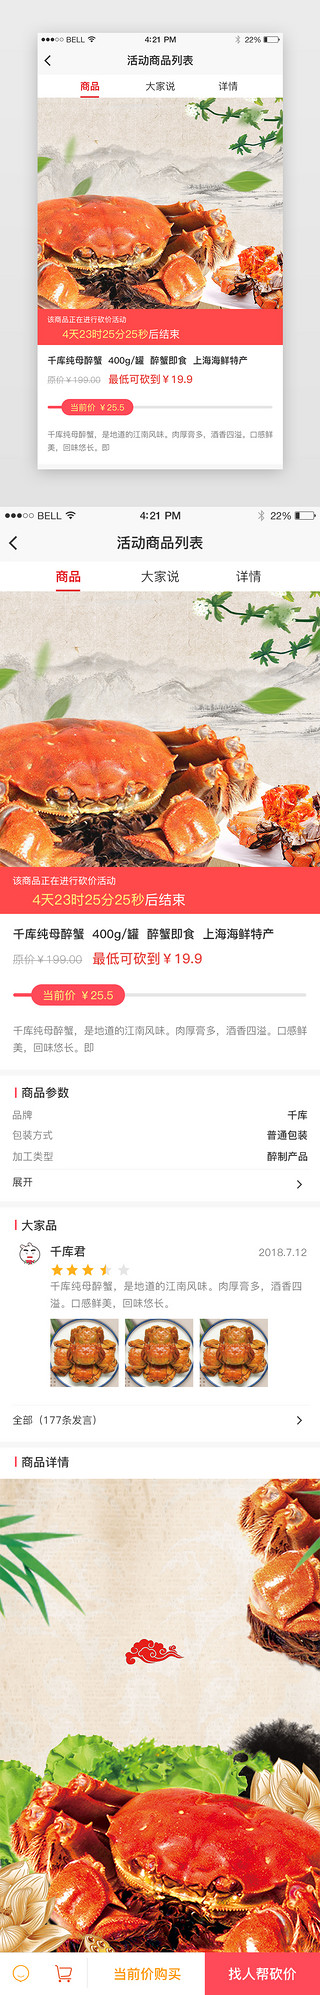 煮熟螃蟹UI设计素材_红色系电商活动商品详情页面